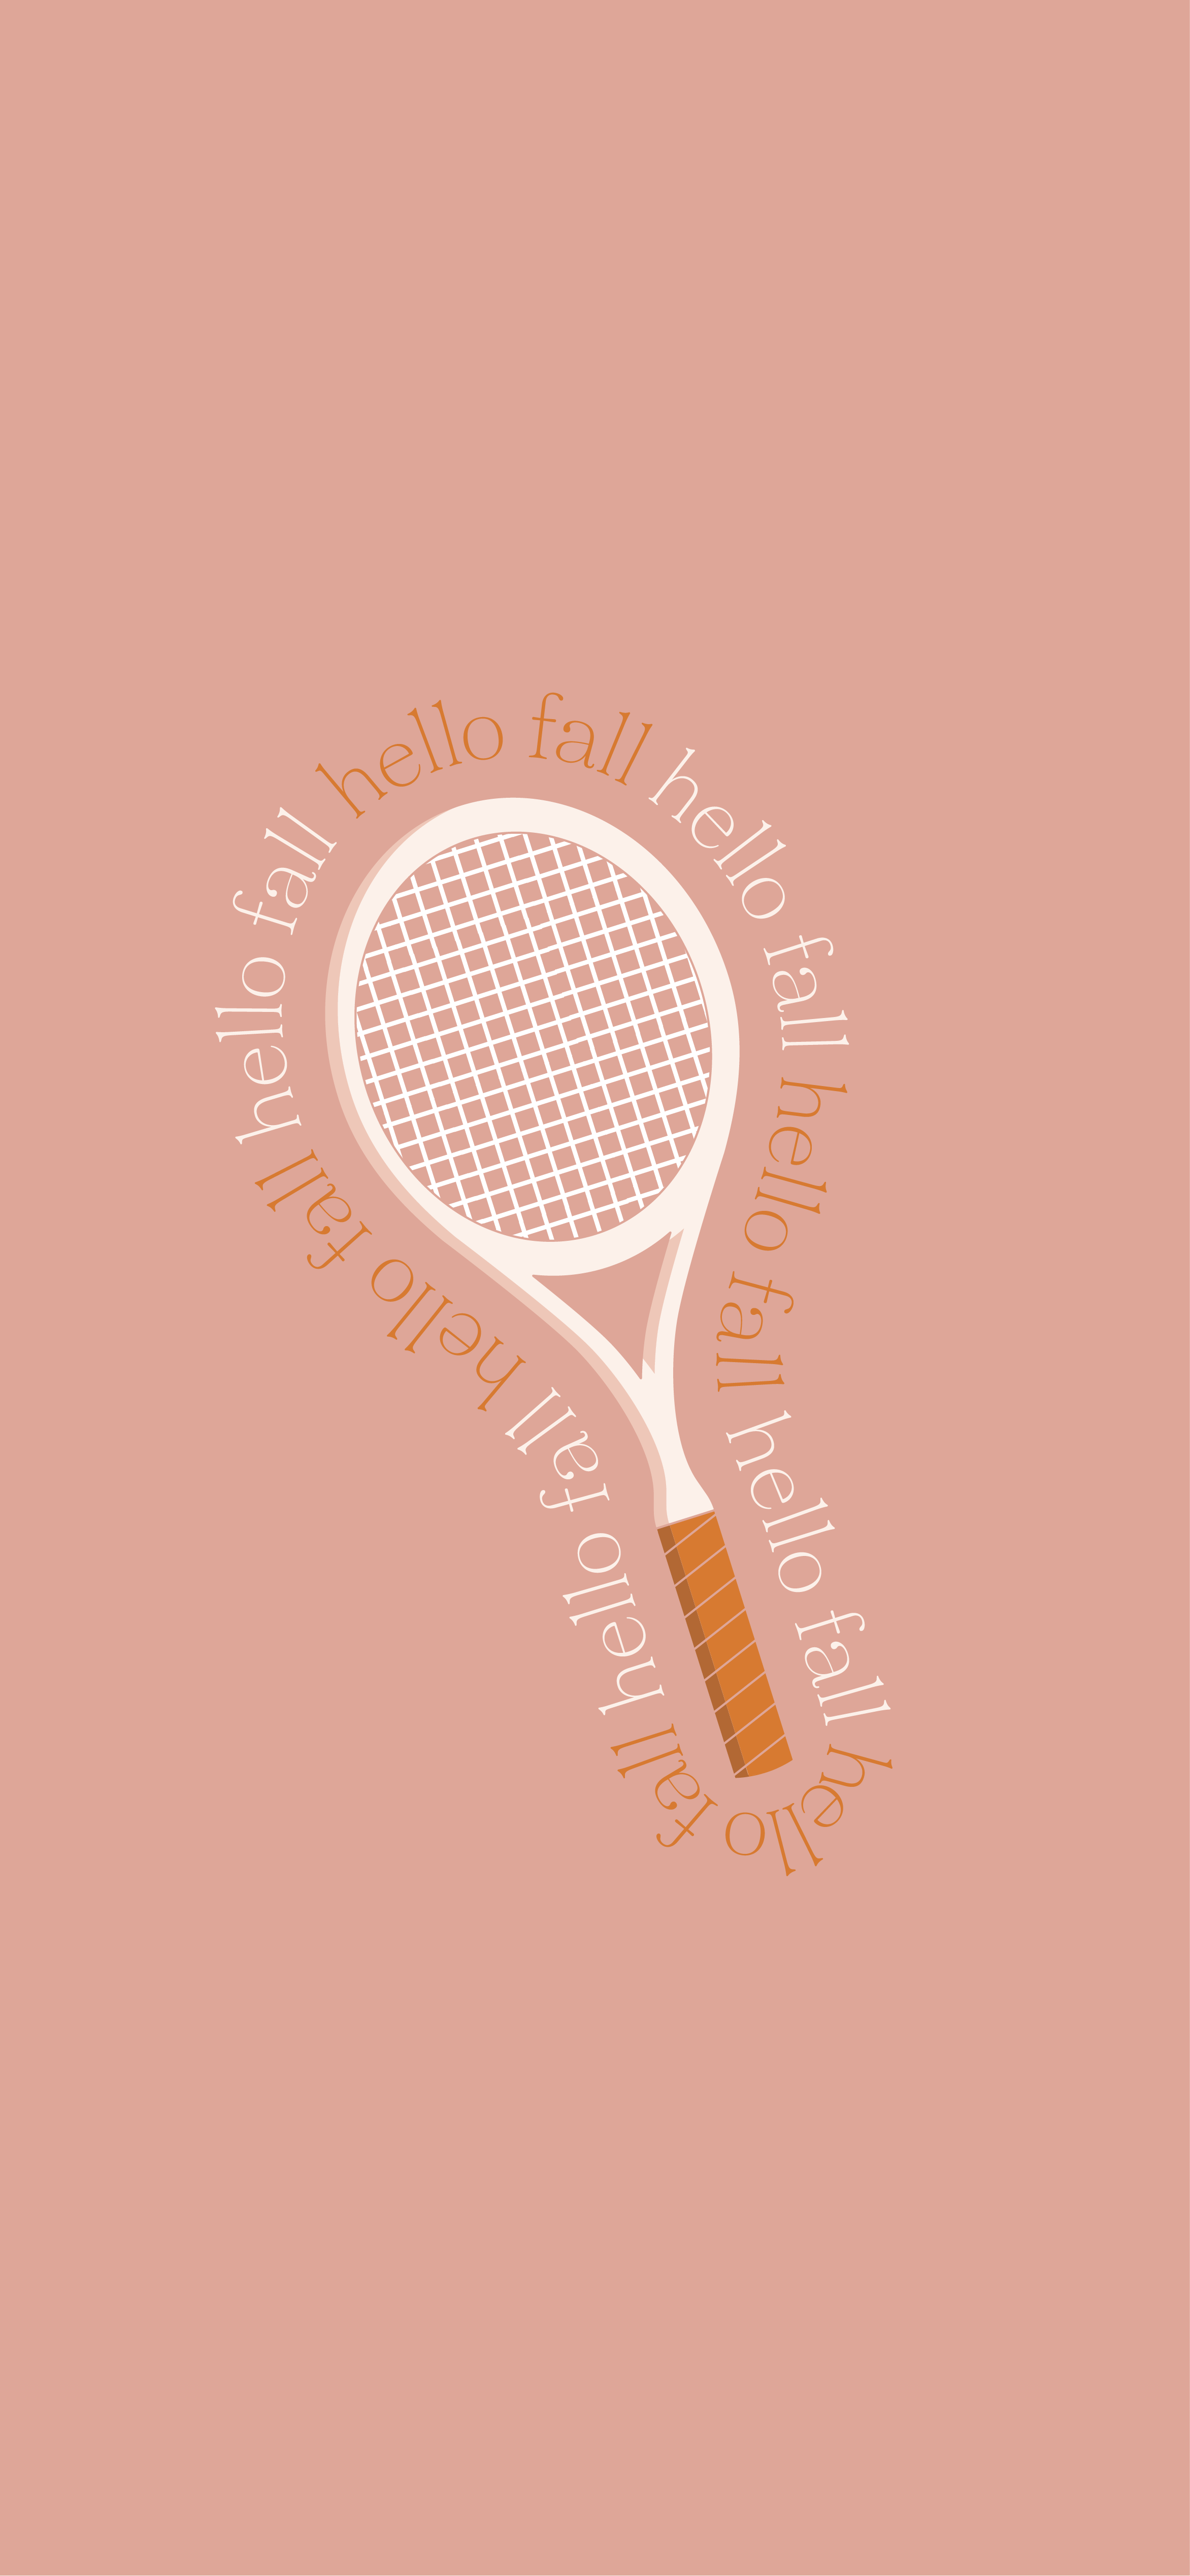  Tennis Hintergrundbild 2344x5076. The Best Fall Phone Wallpaper for Tennis Players